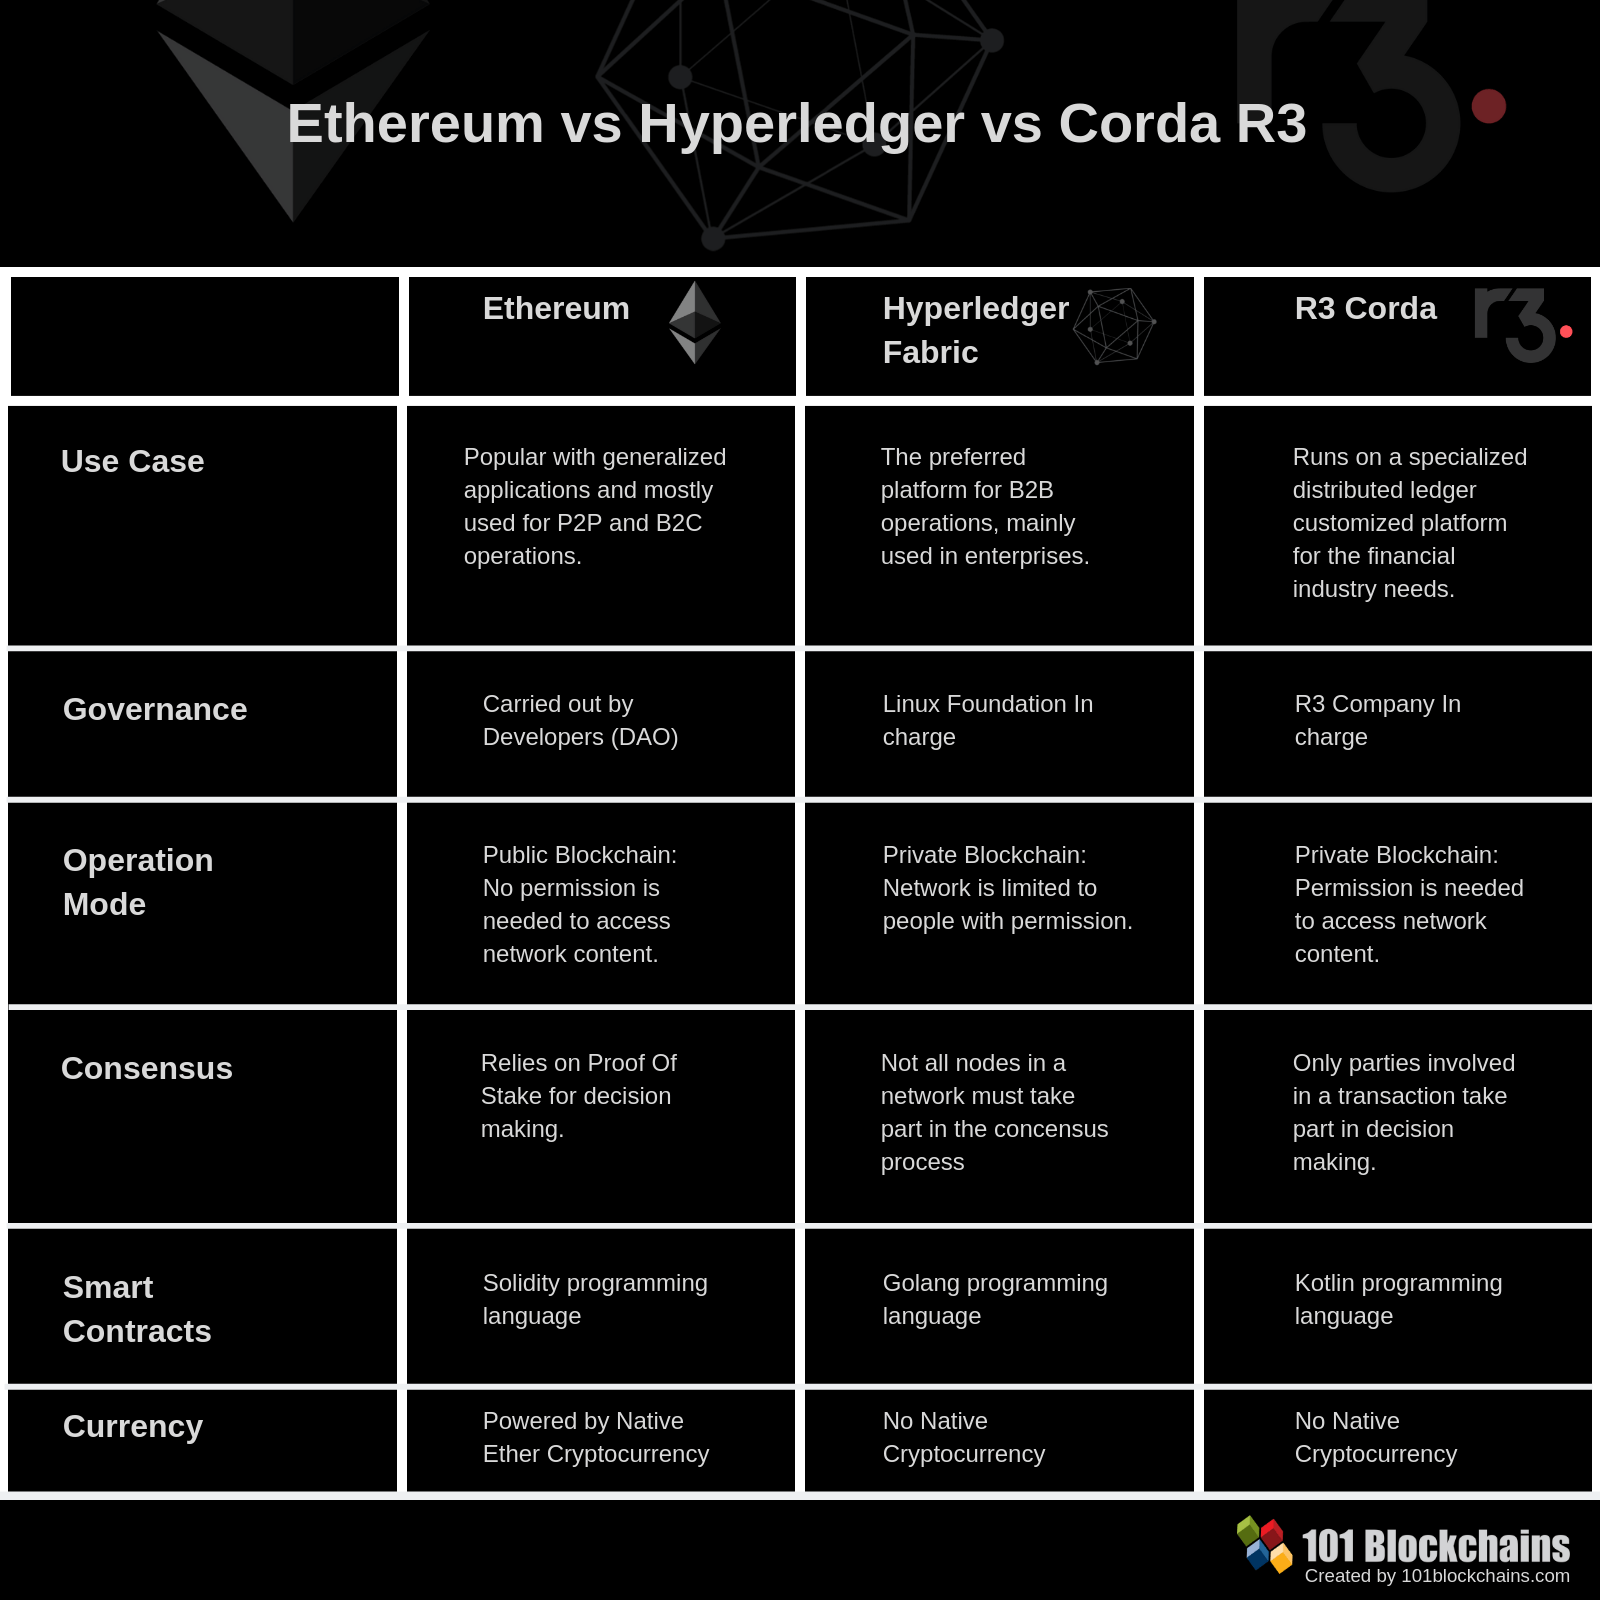 Hyperledger vs Ethereum vs Corda R3